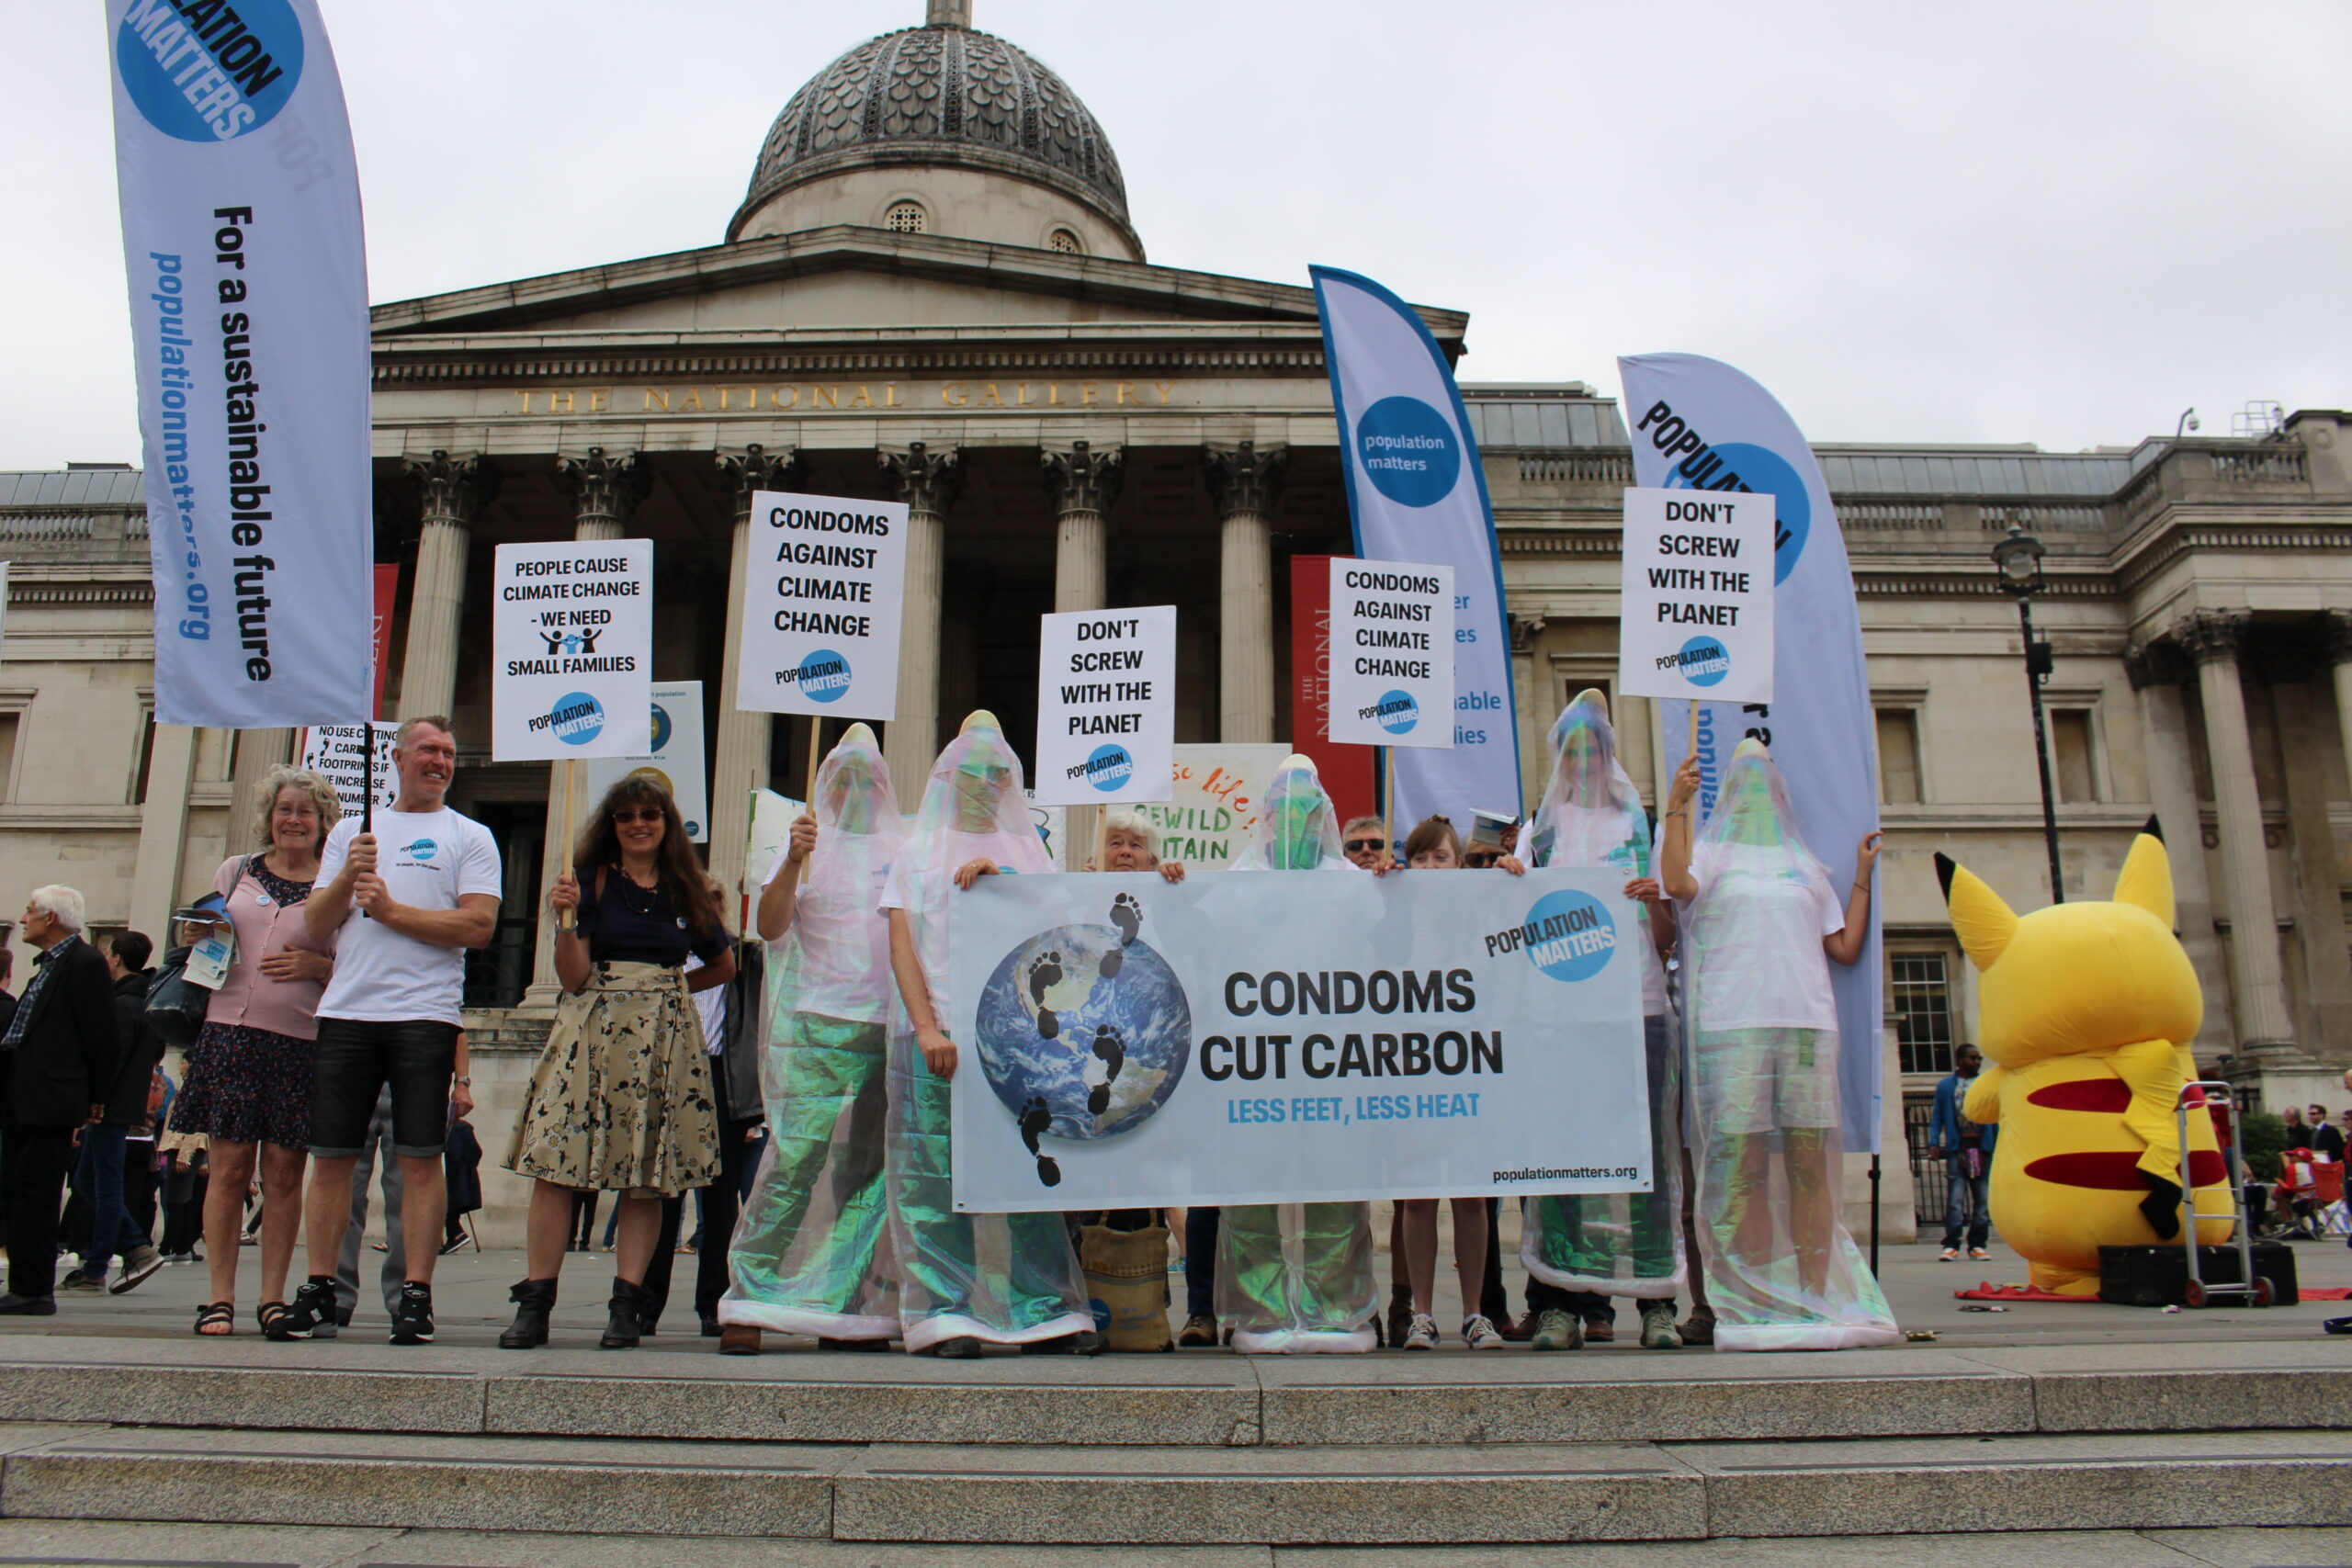 Condoms cut carbon banner